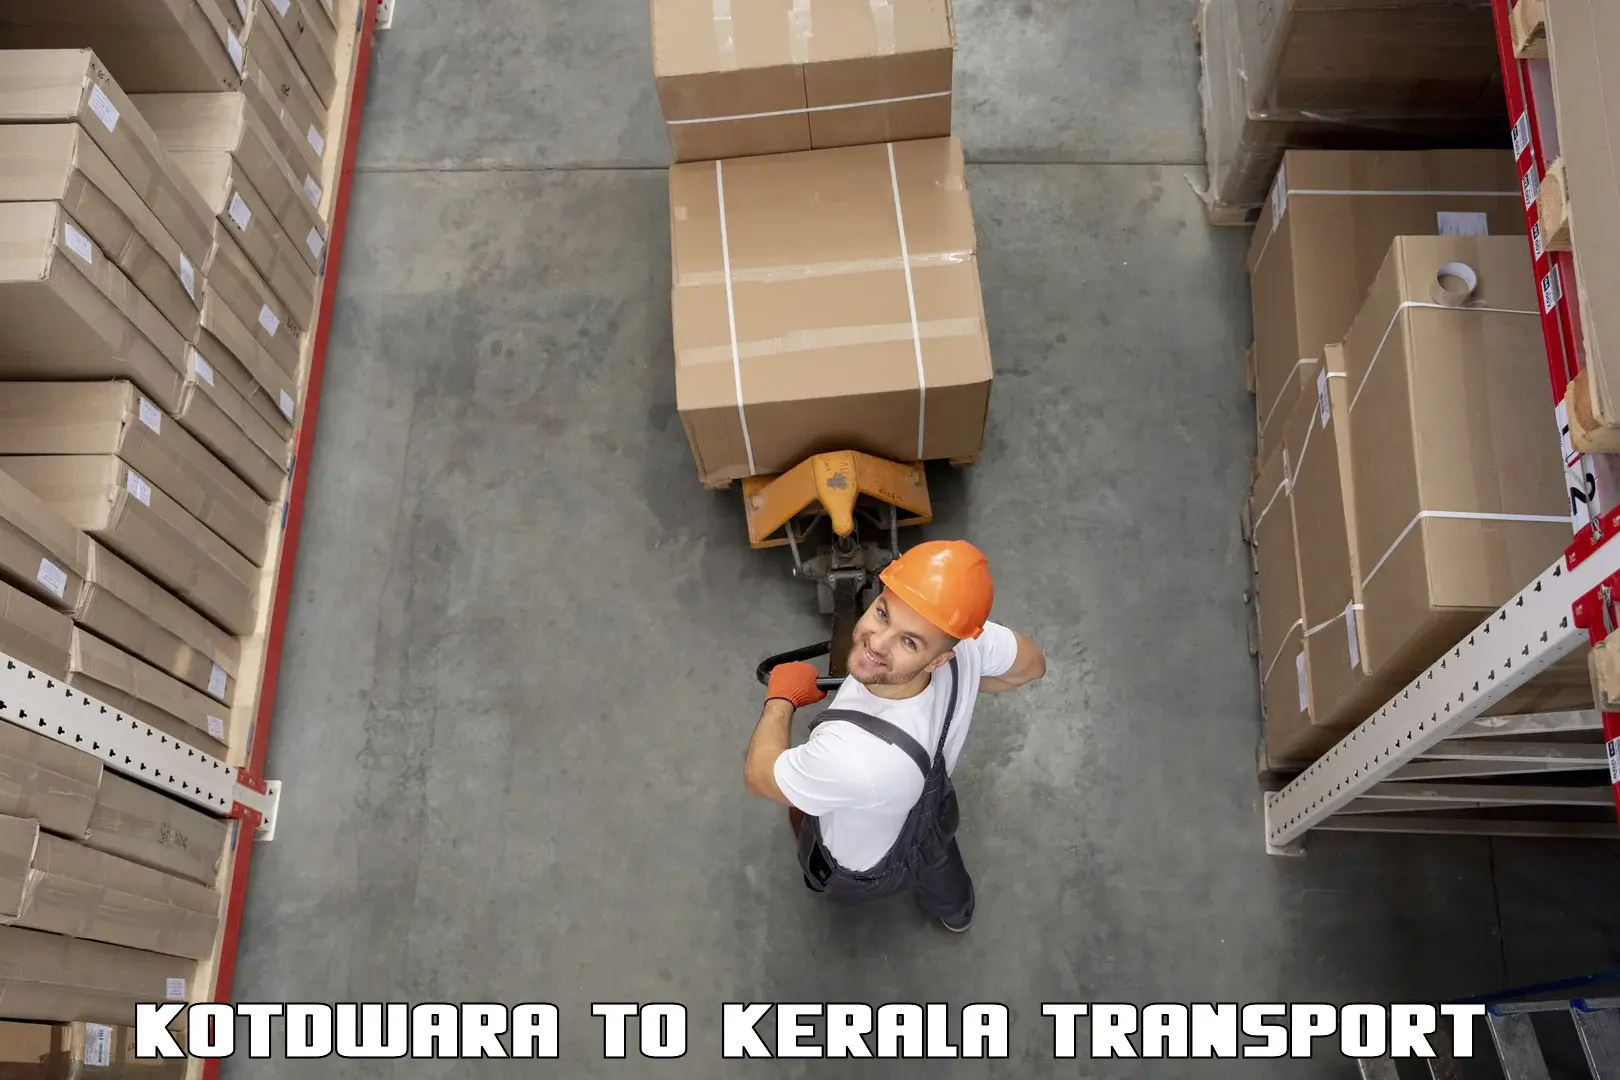 Daily transport service Kotdwara to Kakkayam